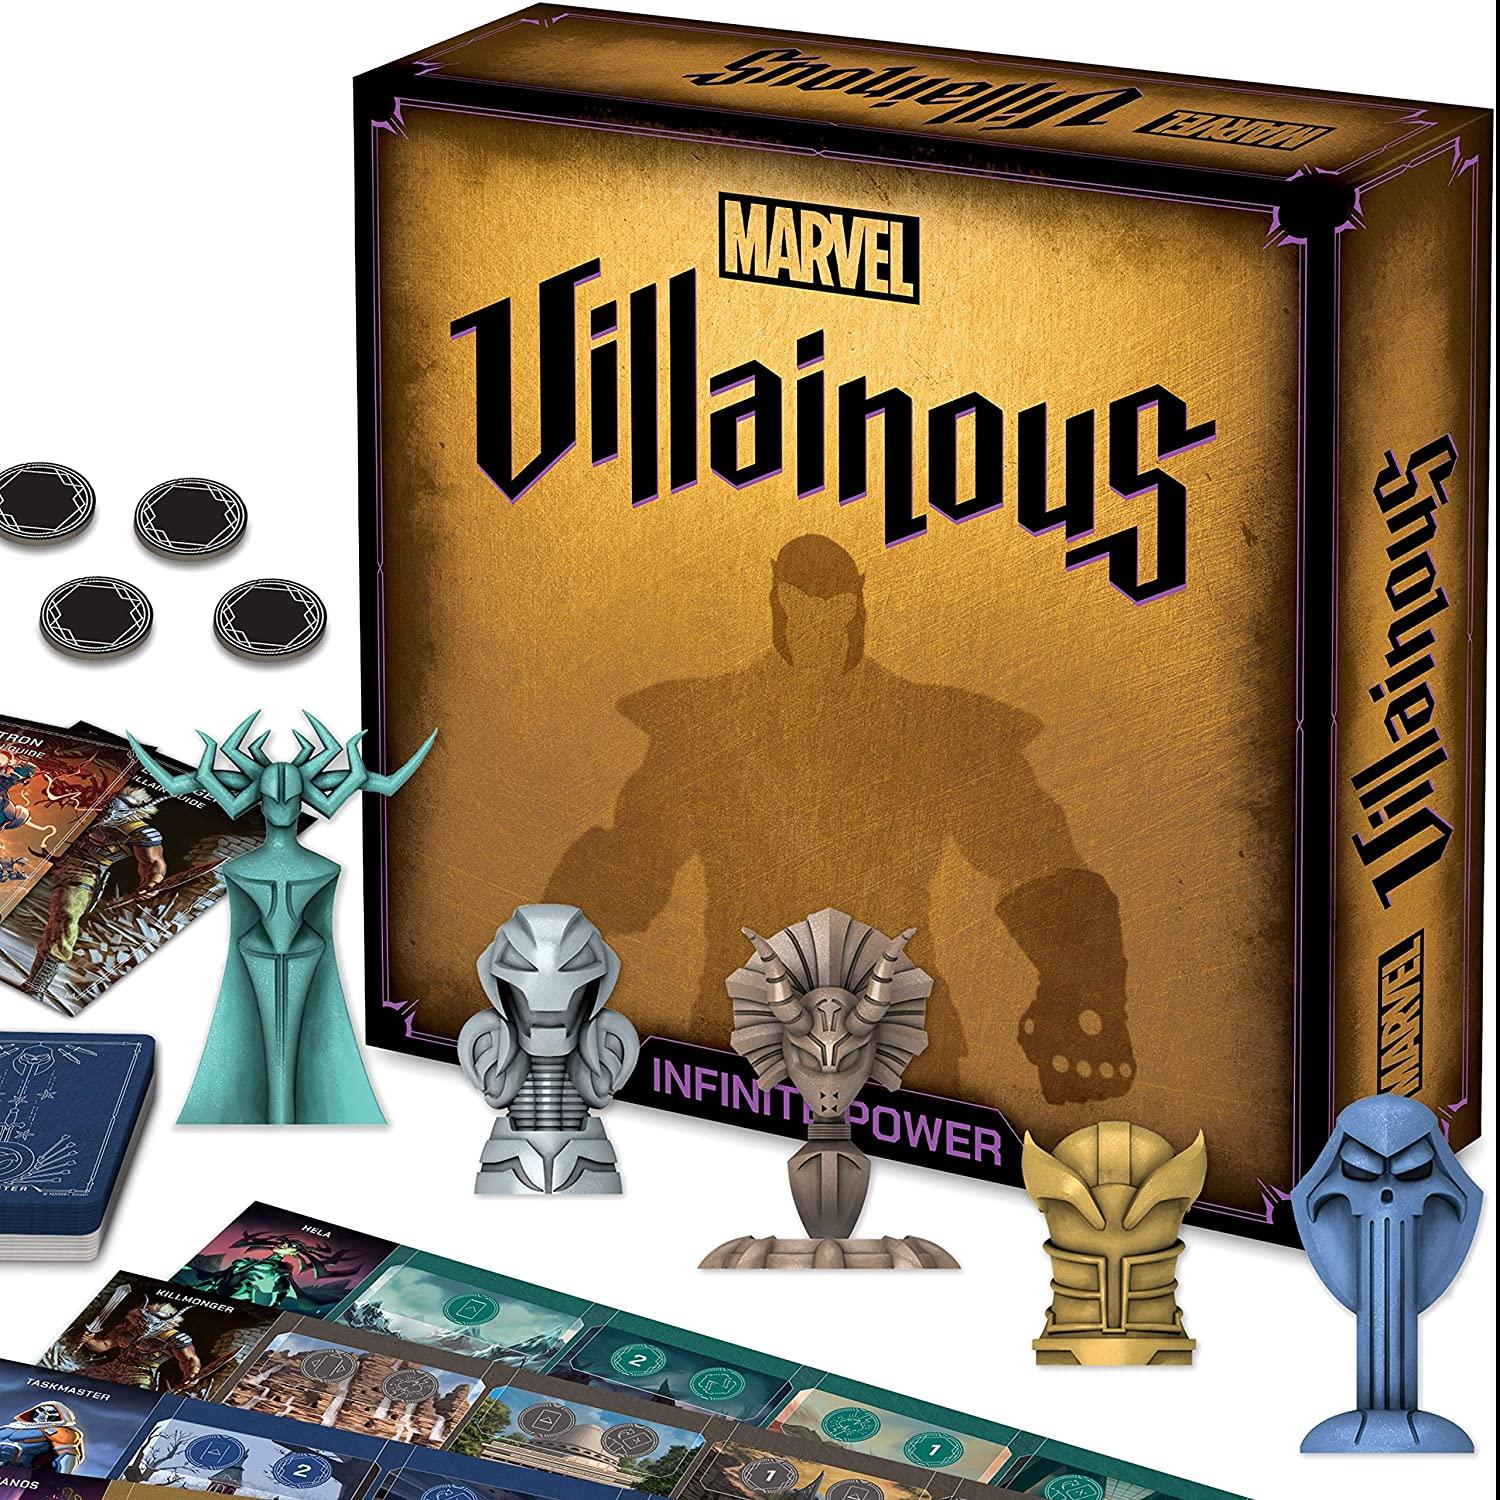 Ravensburger Marvel Villainous Infinite Power Strategy Board Game for $15.46